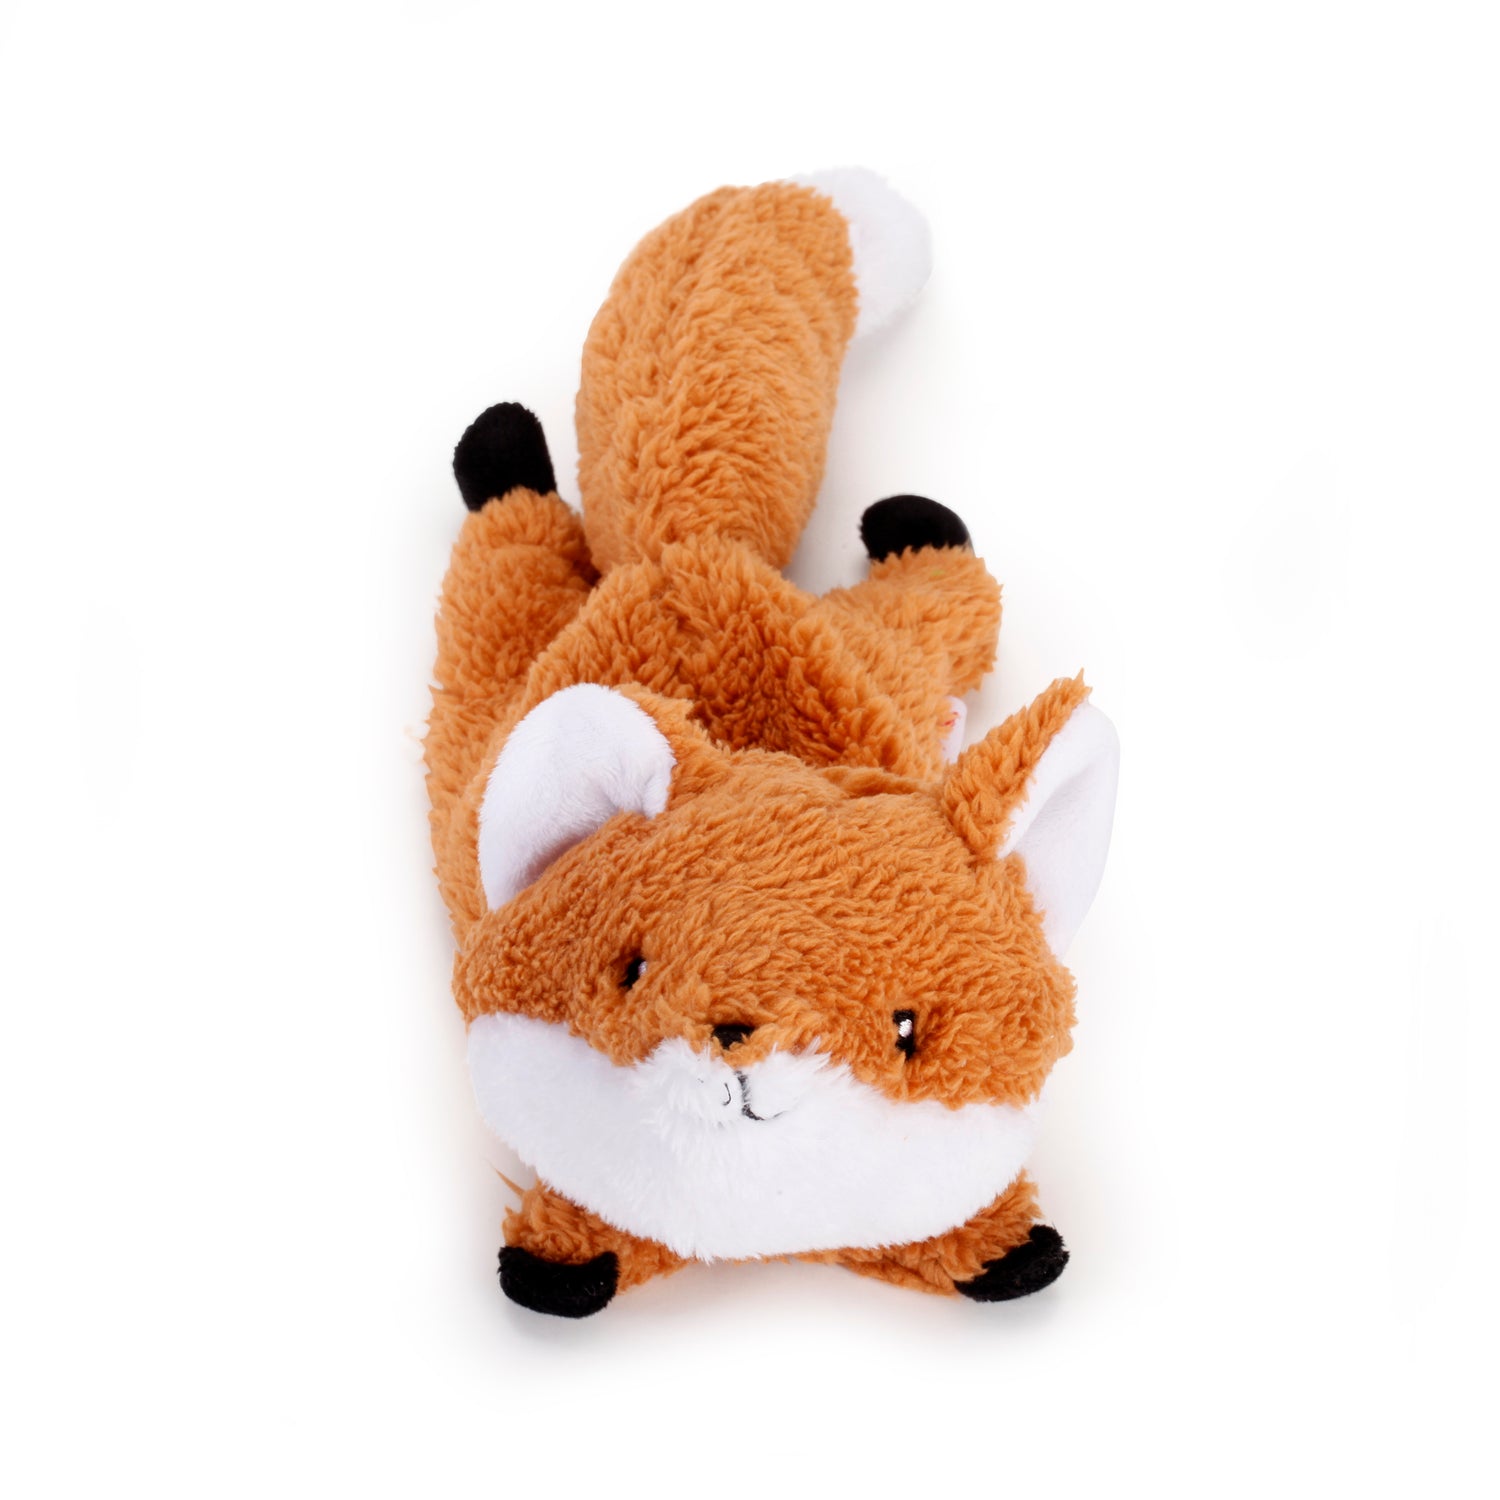 Kobe Flying Fox Toy